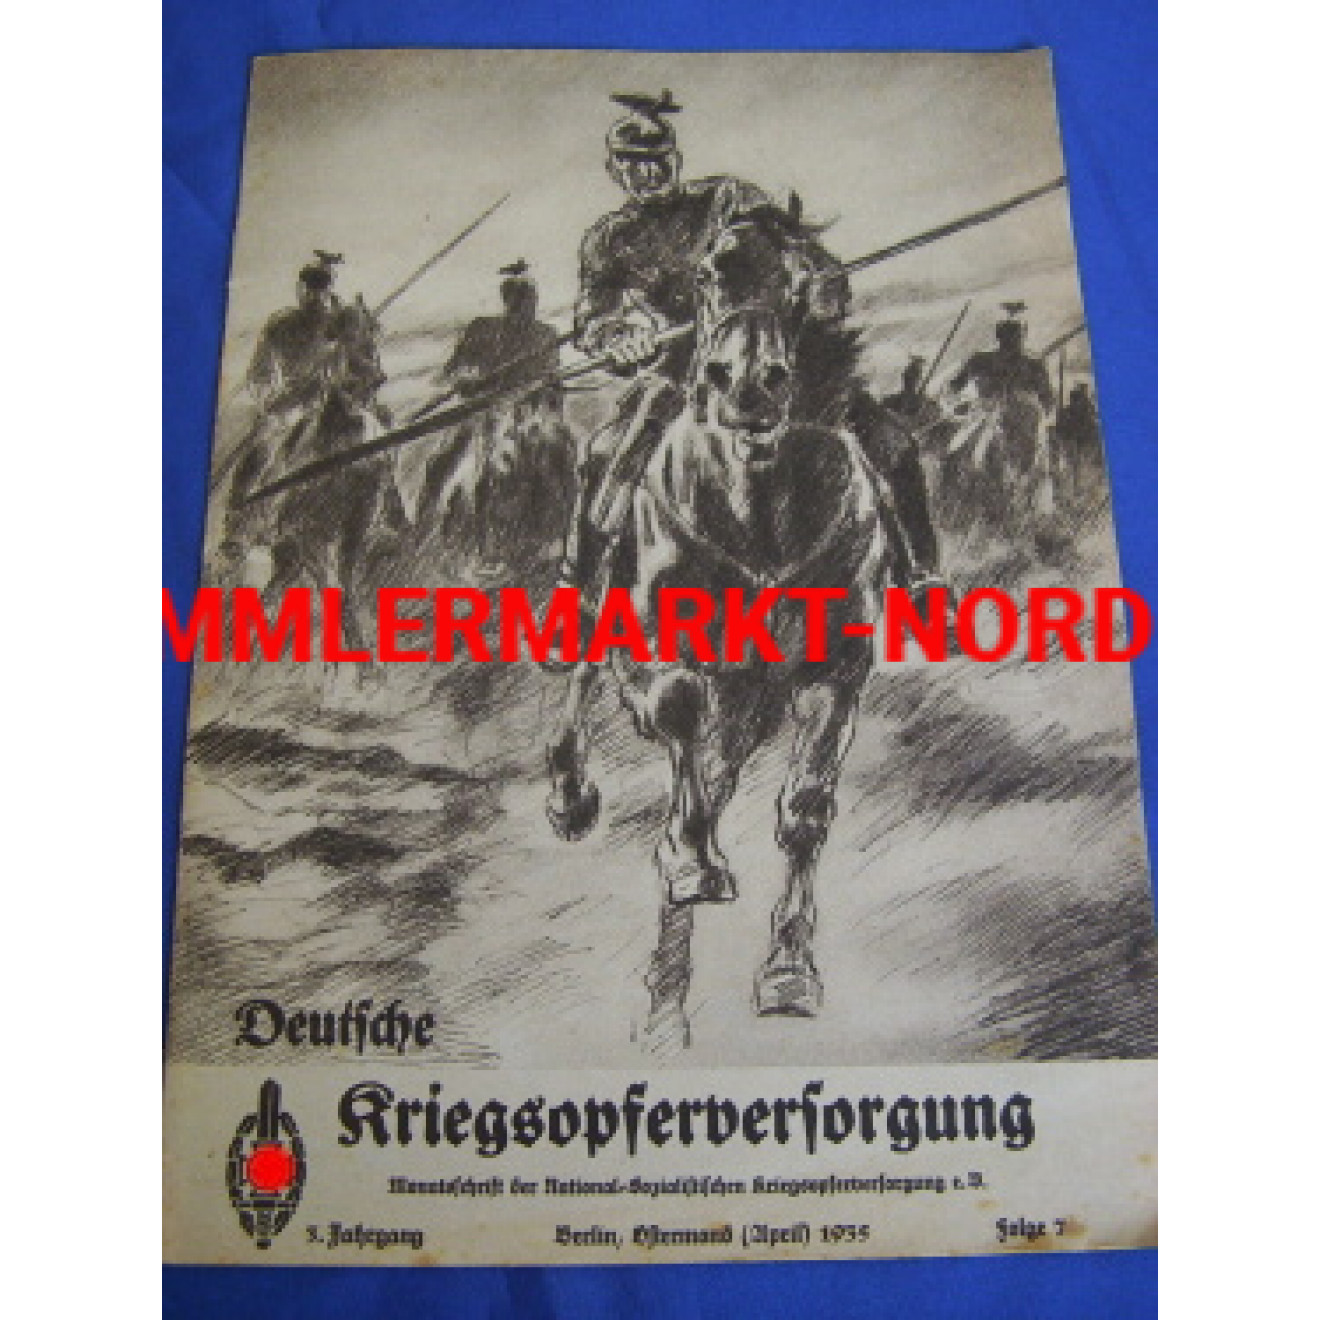 NSKOV Deutsche Kriegsopferversorgung, April 1935